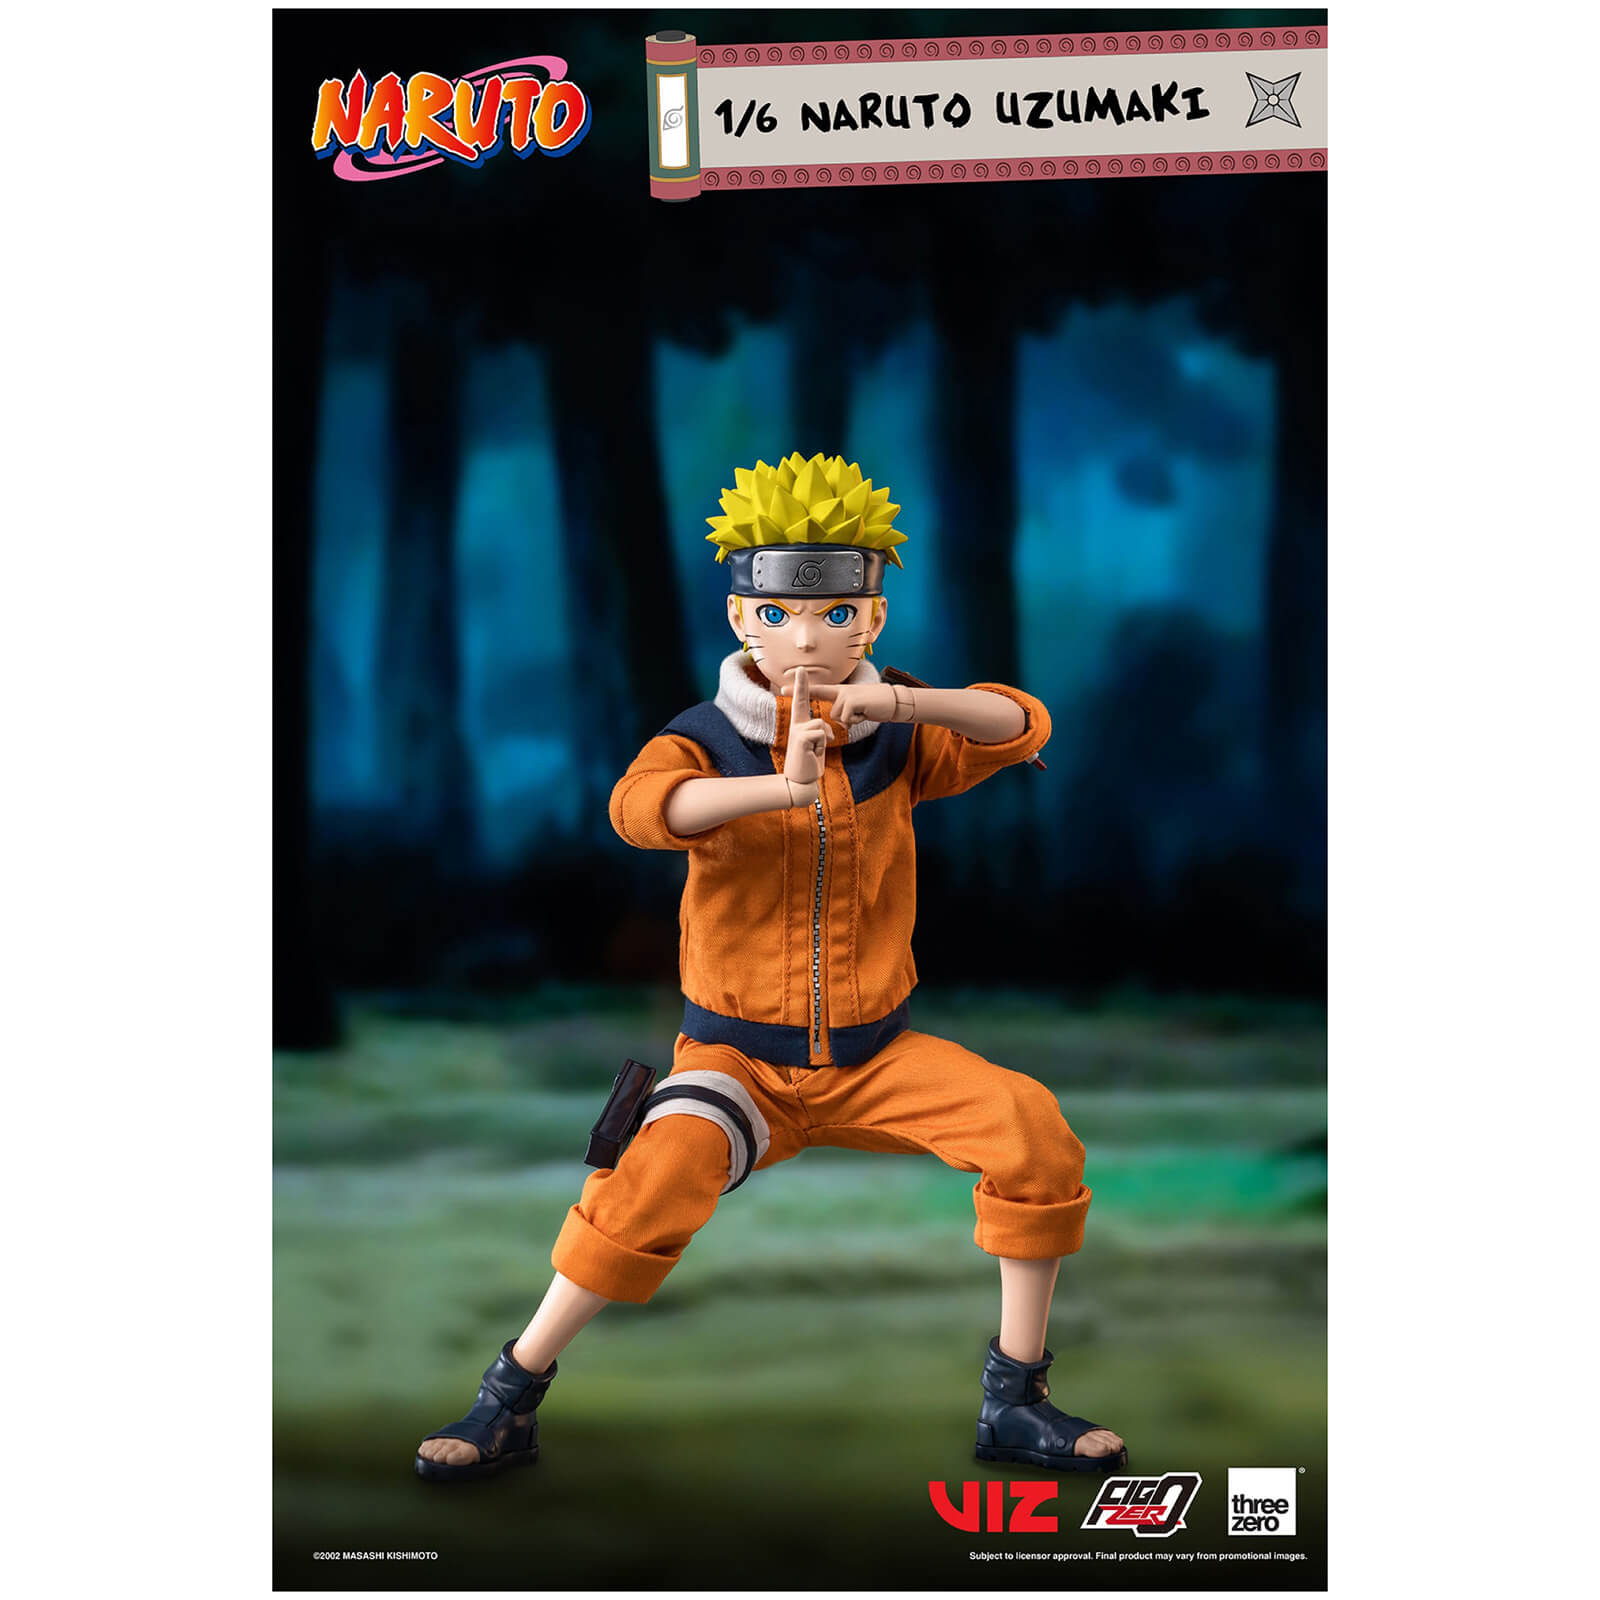 ThreeZero Naruto FigZero 1/6 Scale Collectible Figure - Naru